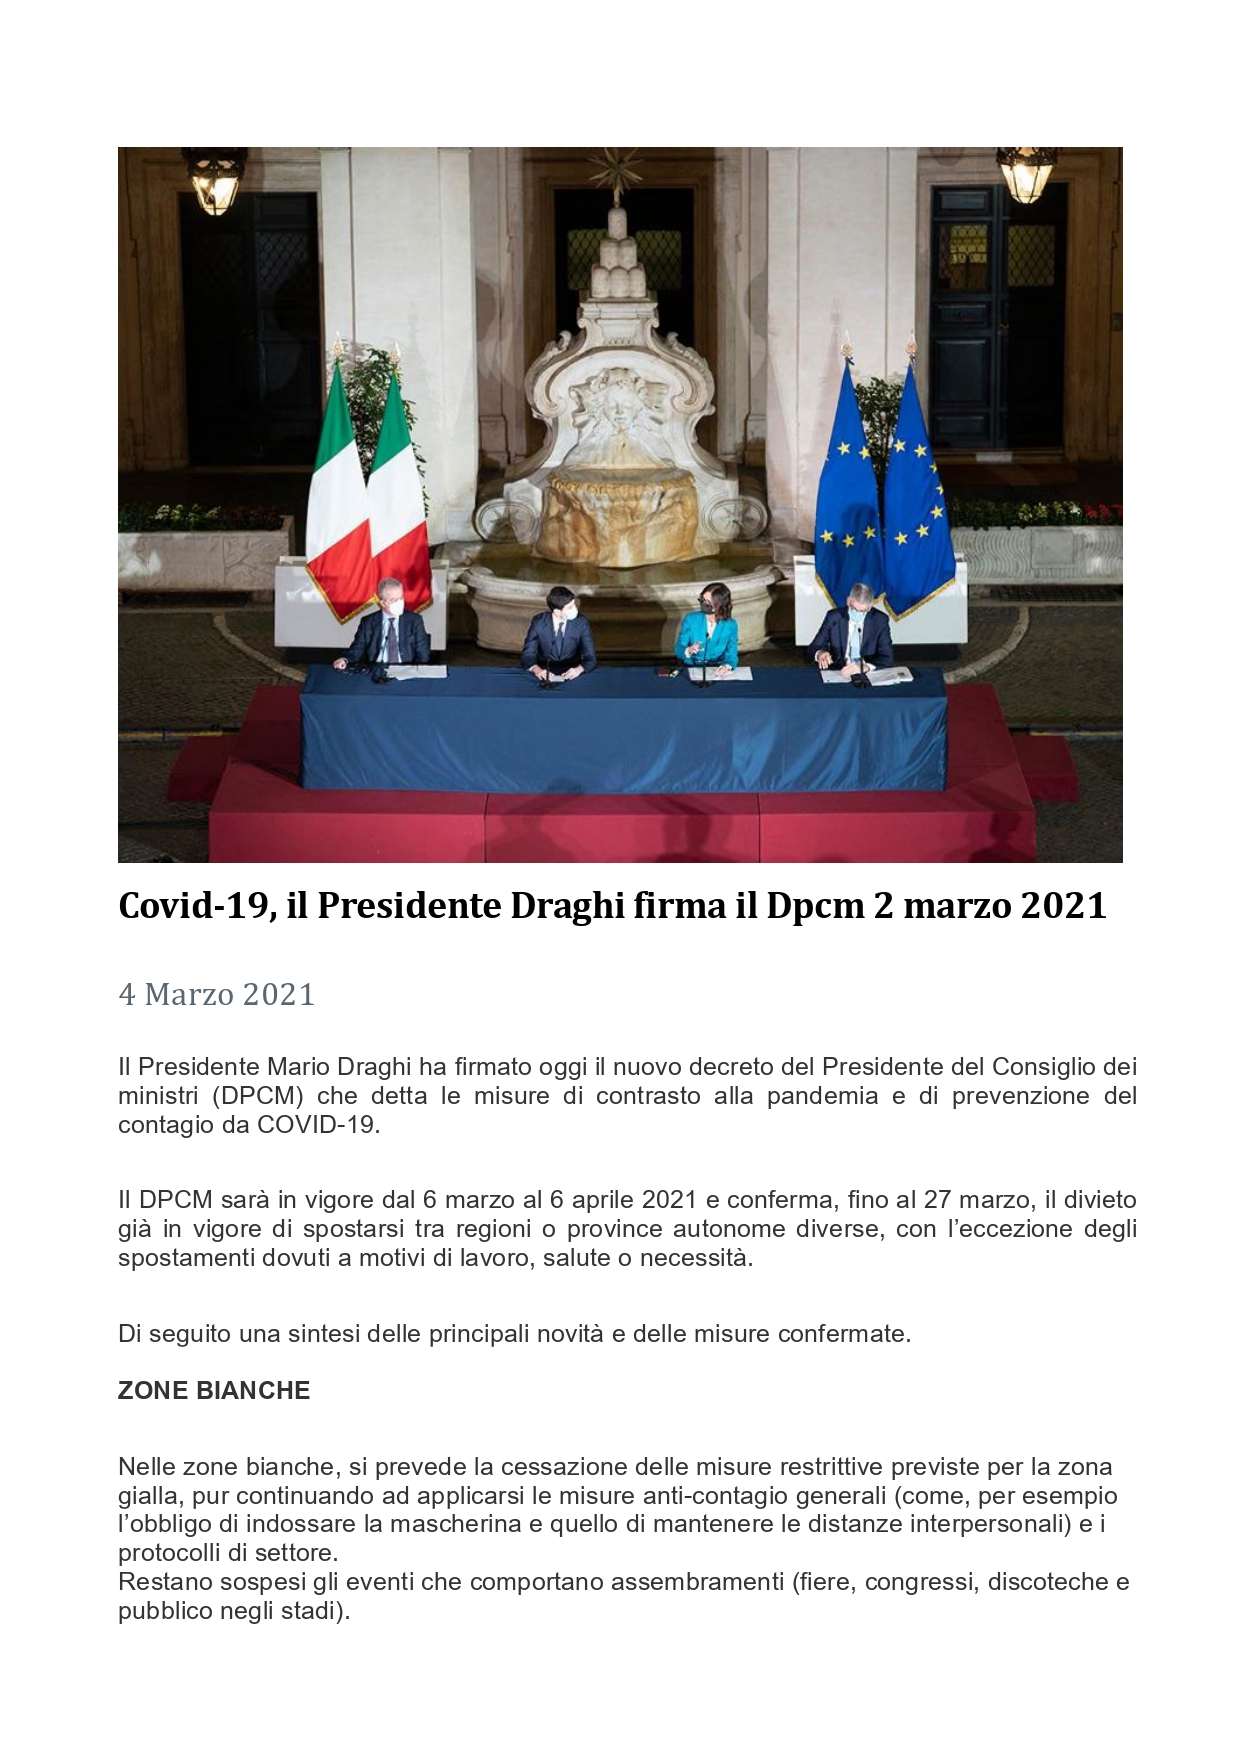 Covid-19: il Presidente Draghi firma il Dpcm 2 marzo 2021